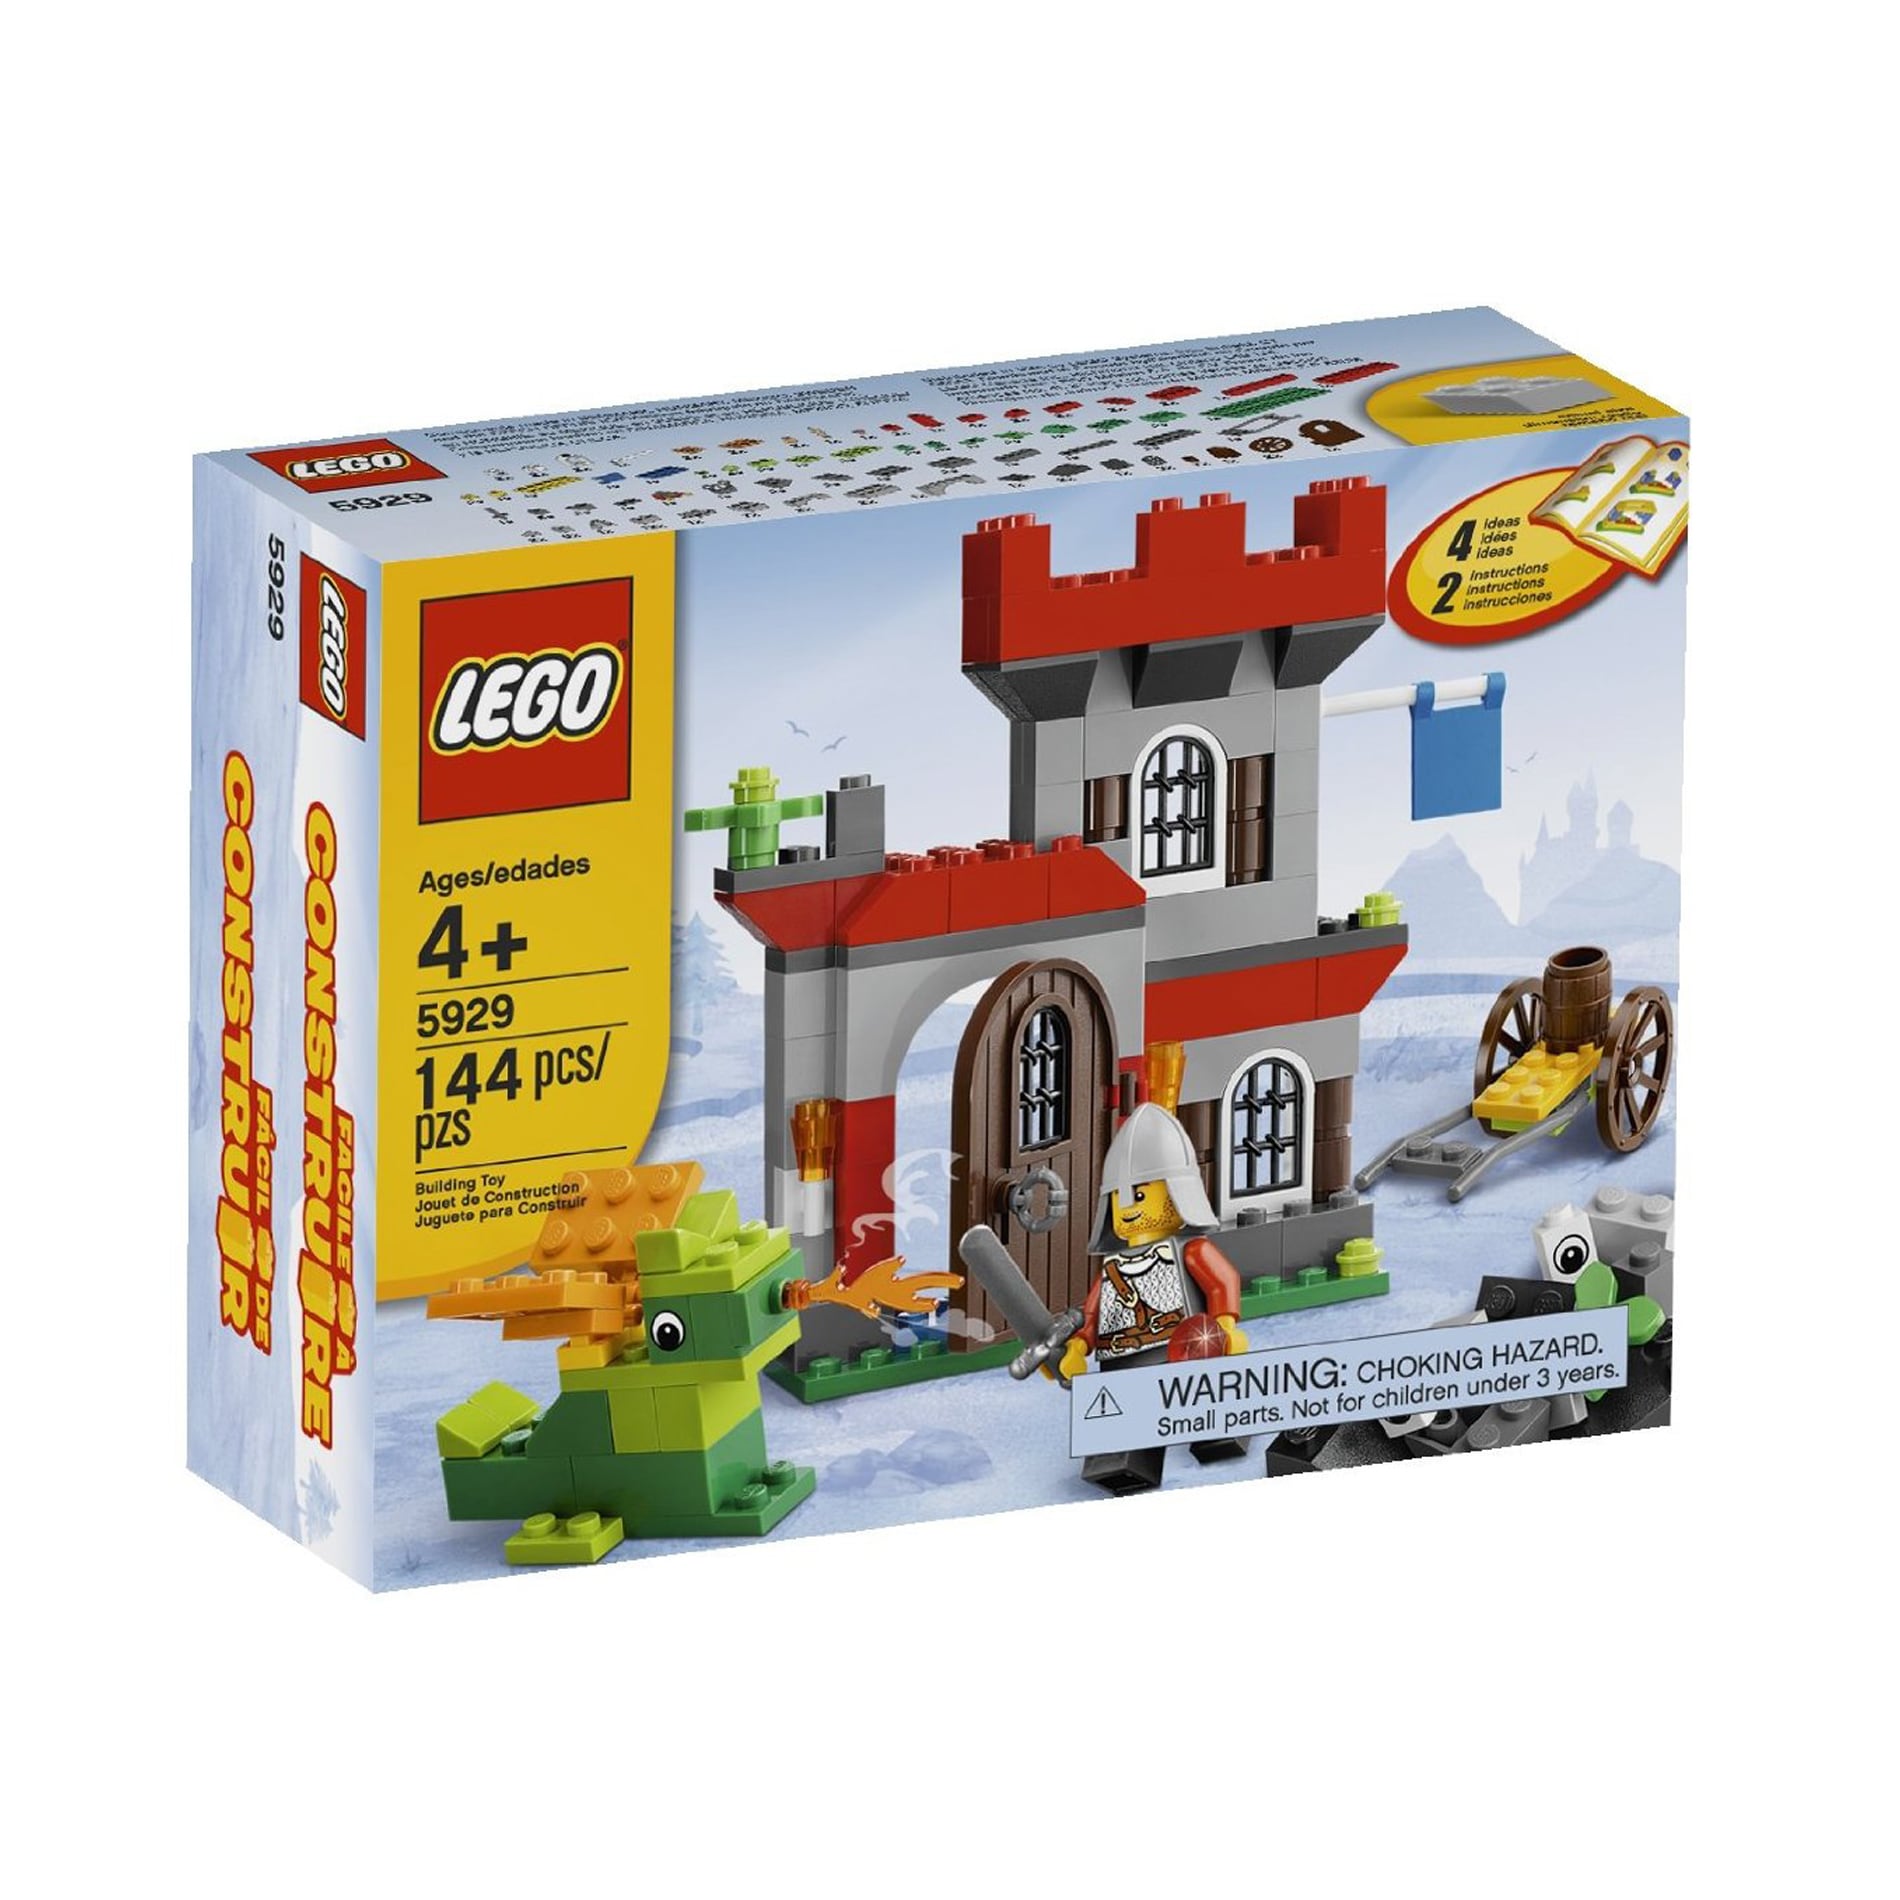 LEGO Castle Building Set Toy Set